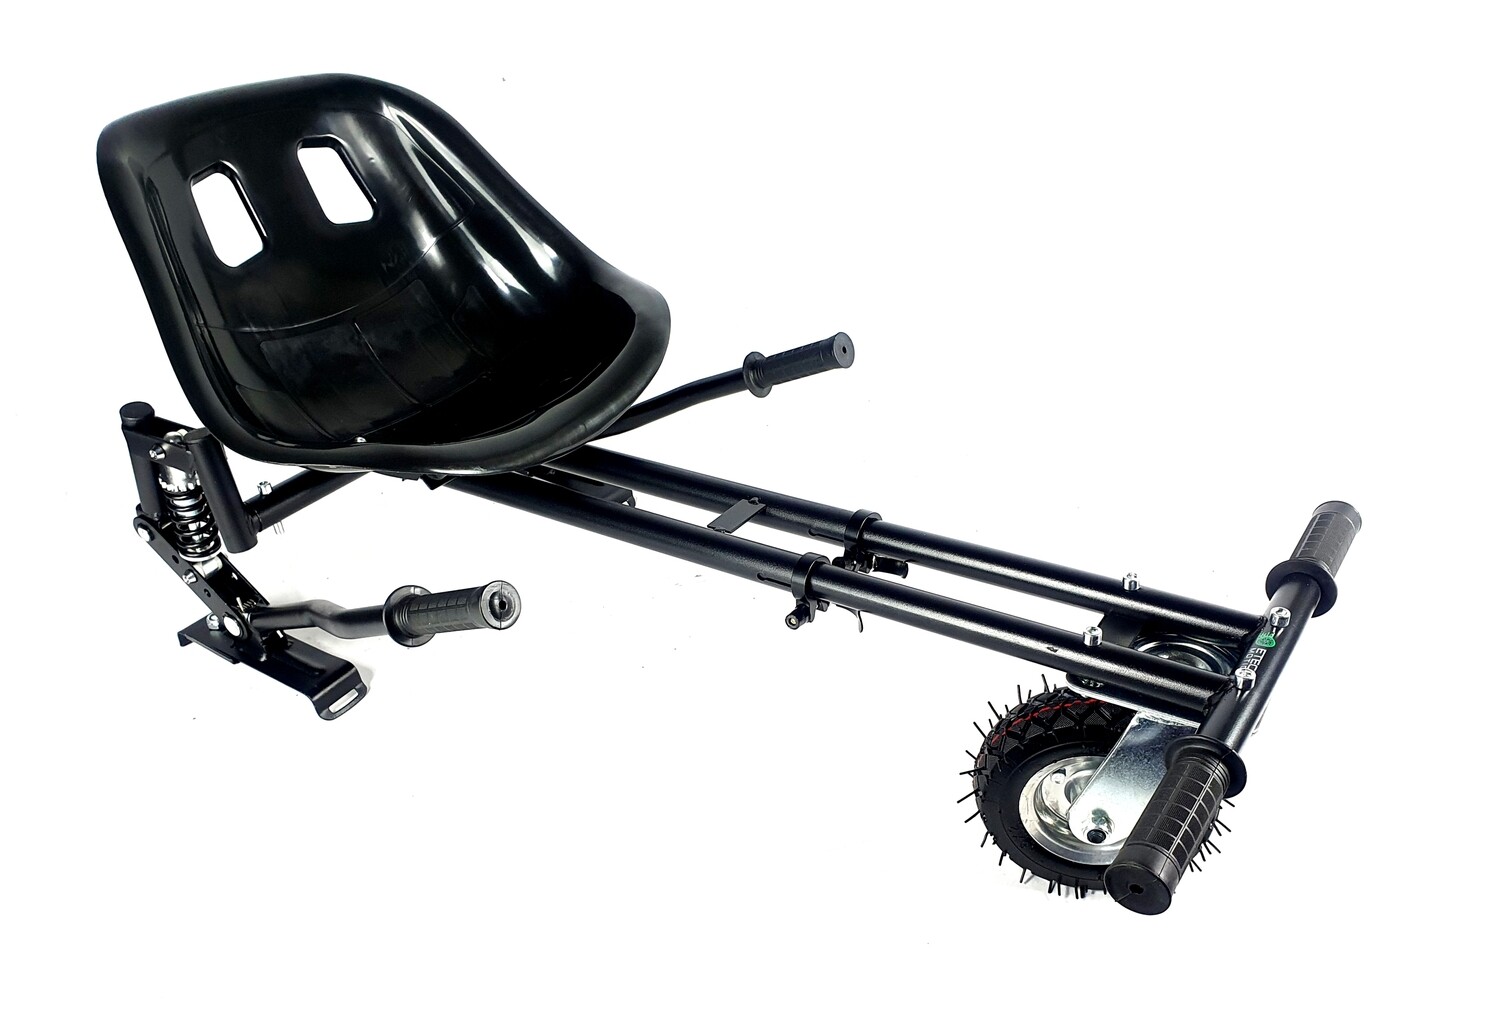 Black Suspension HoverKart Go Kart Conversion For Hoverboard Segway HK7-SR